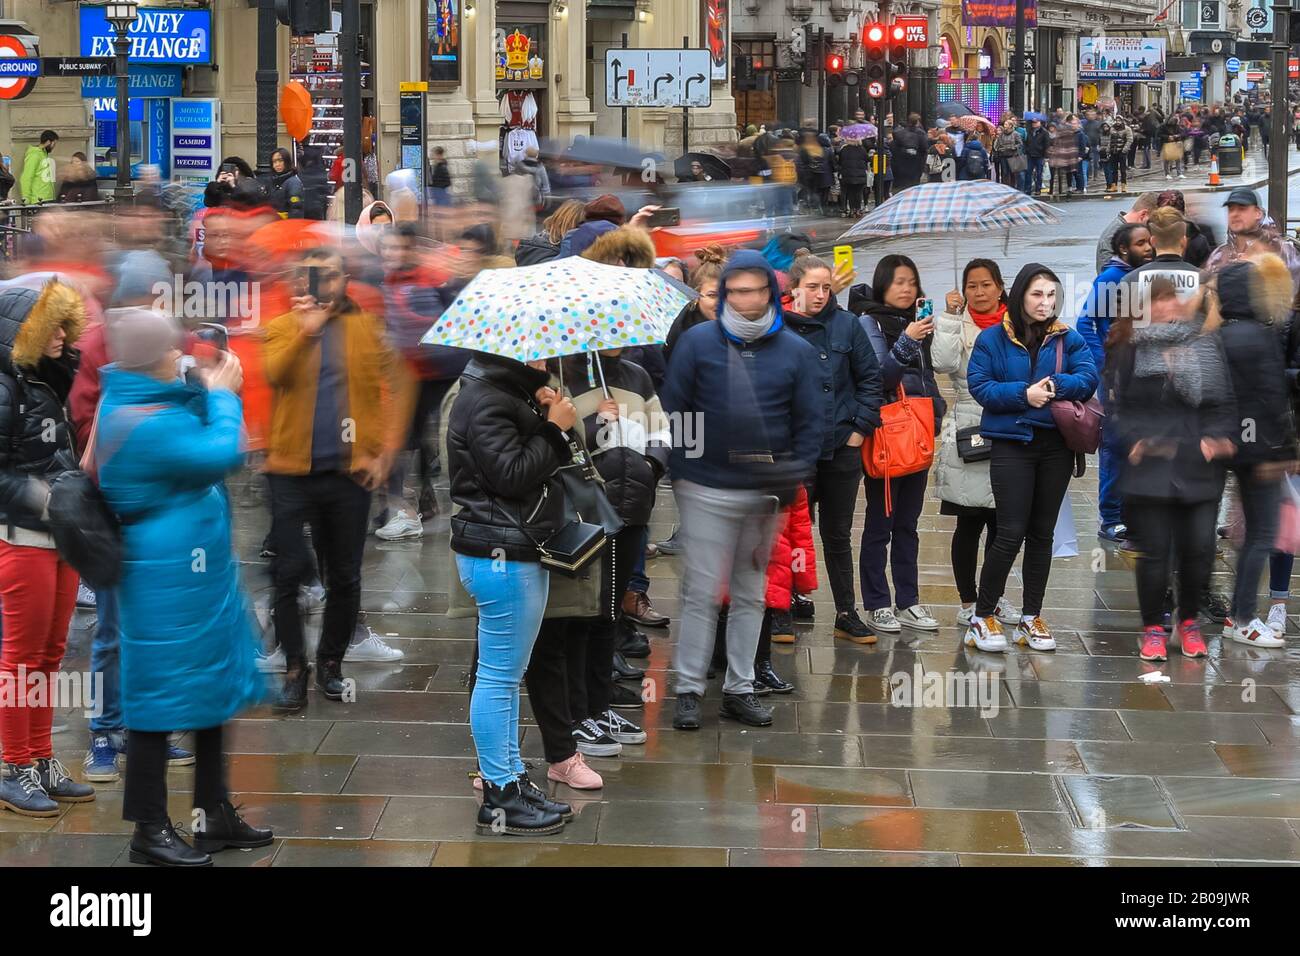 West End, London, Großbritannien. Feb. 2020. Touristen am Piccadilly Circus machen das Wetter am meisten. Touristen und Londoner machen an einem nassen, aber milden Tag im Londoner West End die meisten kurzen Regenlücken. Kredit: Imageplotter/Alamy Live News Stockfoto